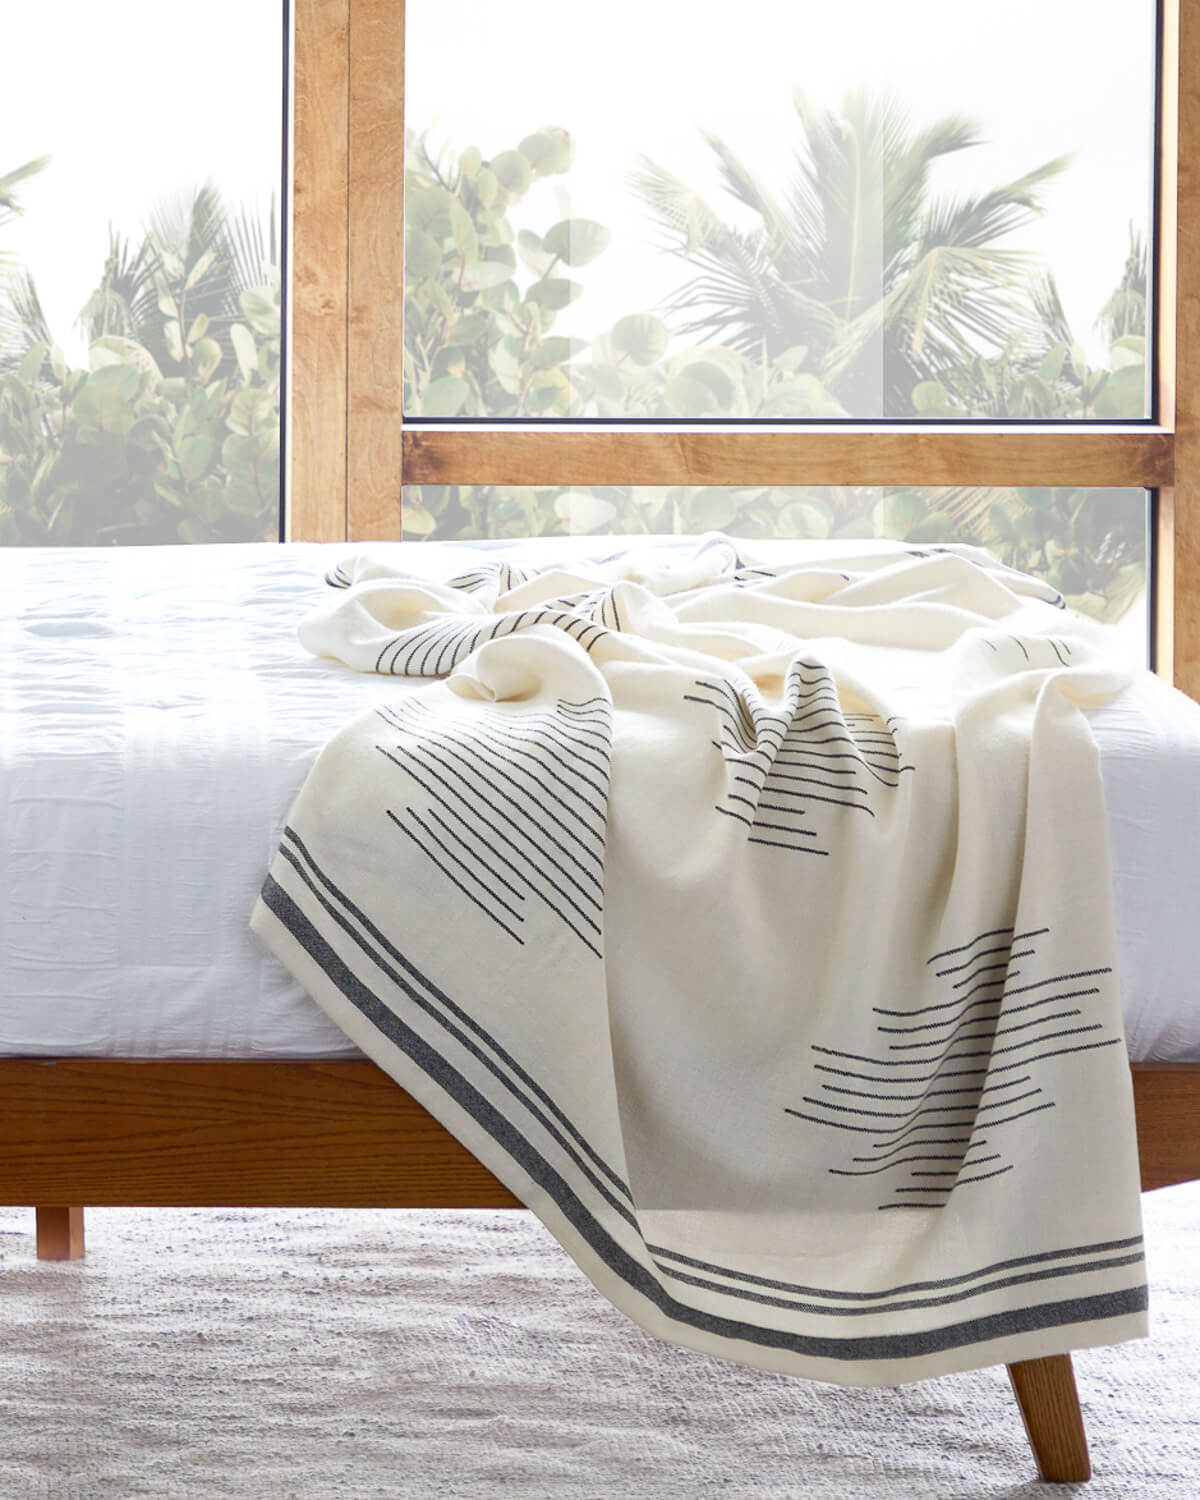 
                  
                    Luxury white and black alpaca throw blanket in modern bedroom.
                  
                